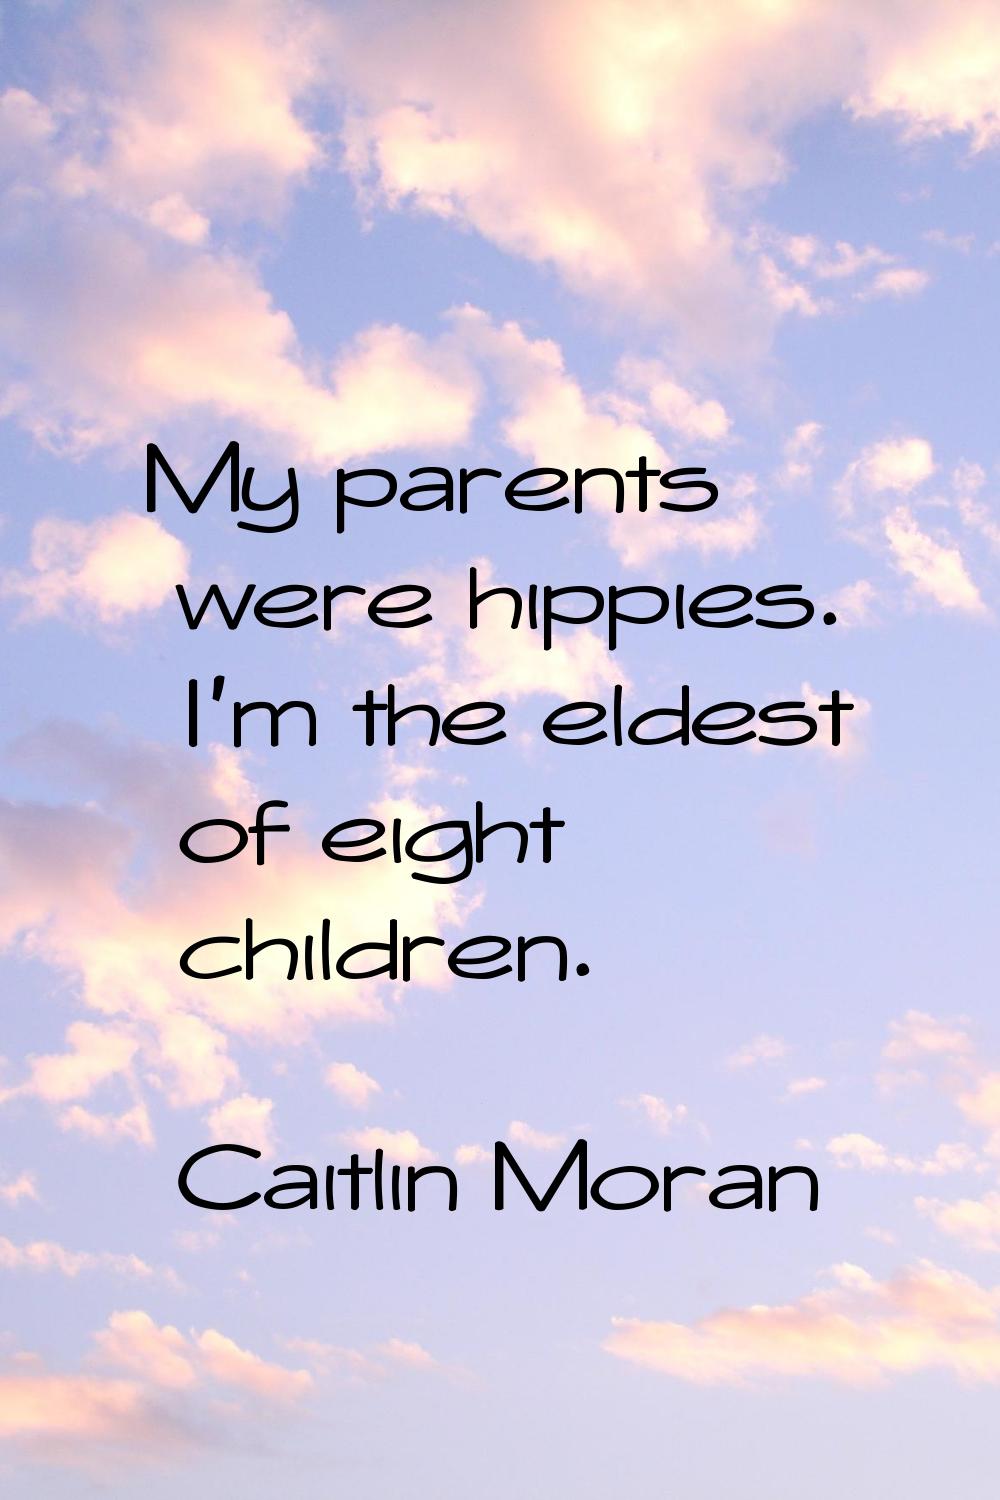 My parents were hippies. I'm the eldest of eight children.